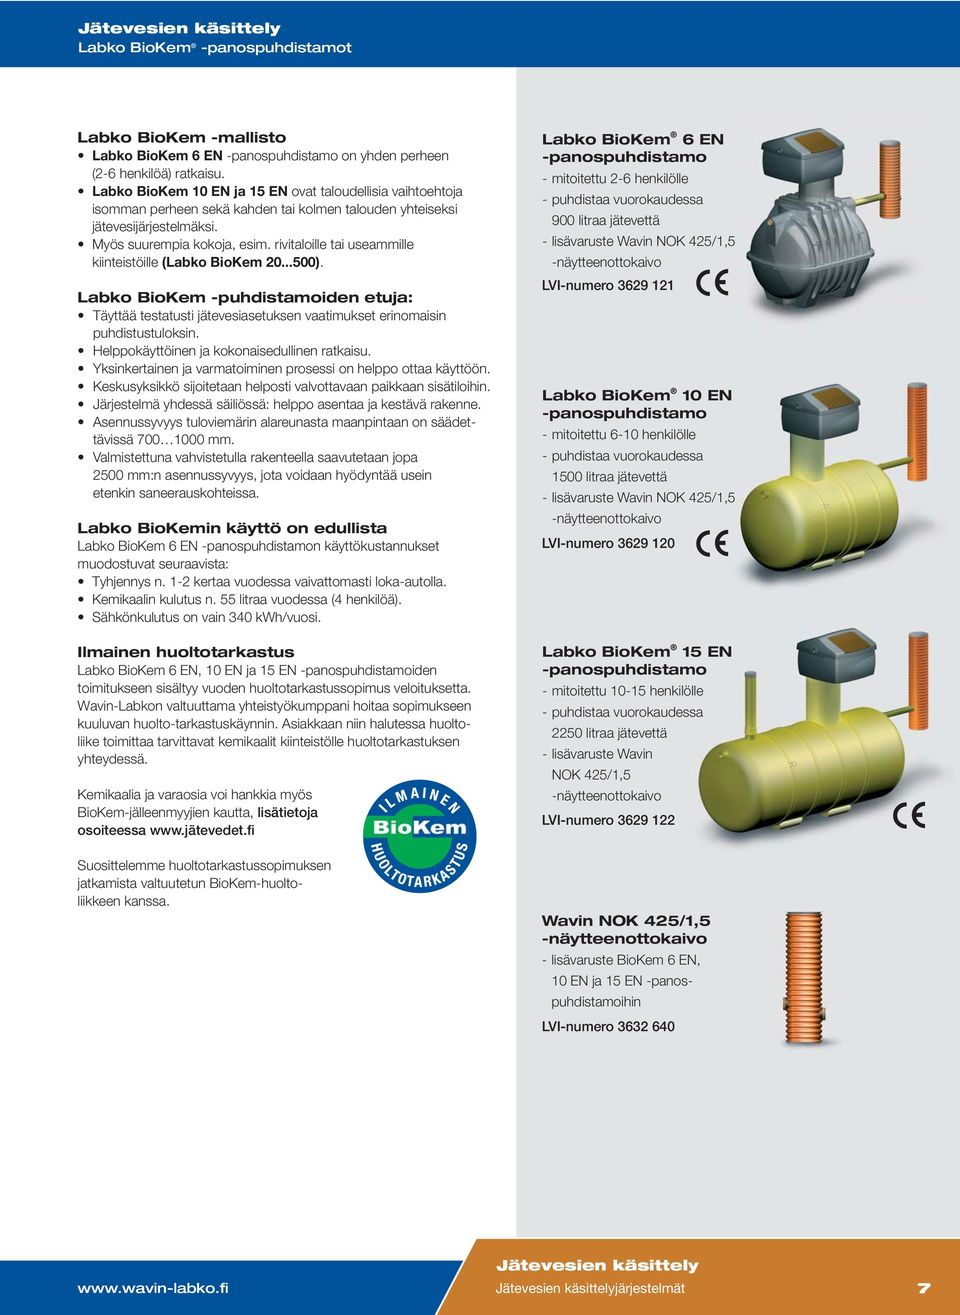 rivitaloille tai useammille kiinteistöille (Labko BioKem 20...500). Labko BioKem -puhdistamoiden etuja: Täyttää testatusti jätevesiasetuksen vaatimukset erinomaisin puhdistustuloksin.